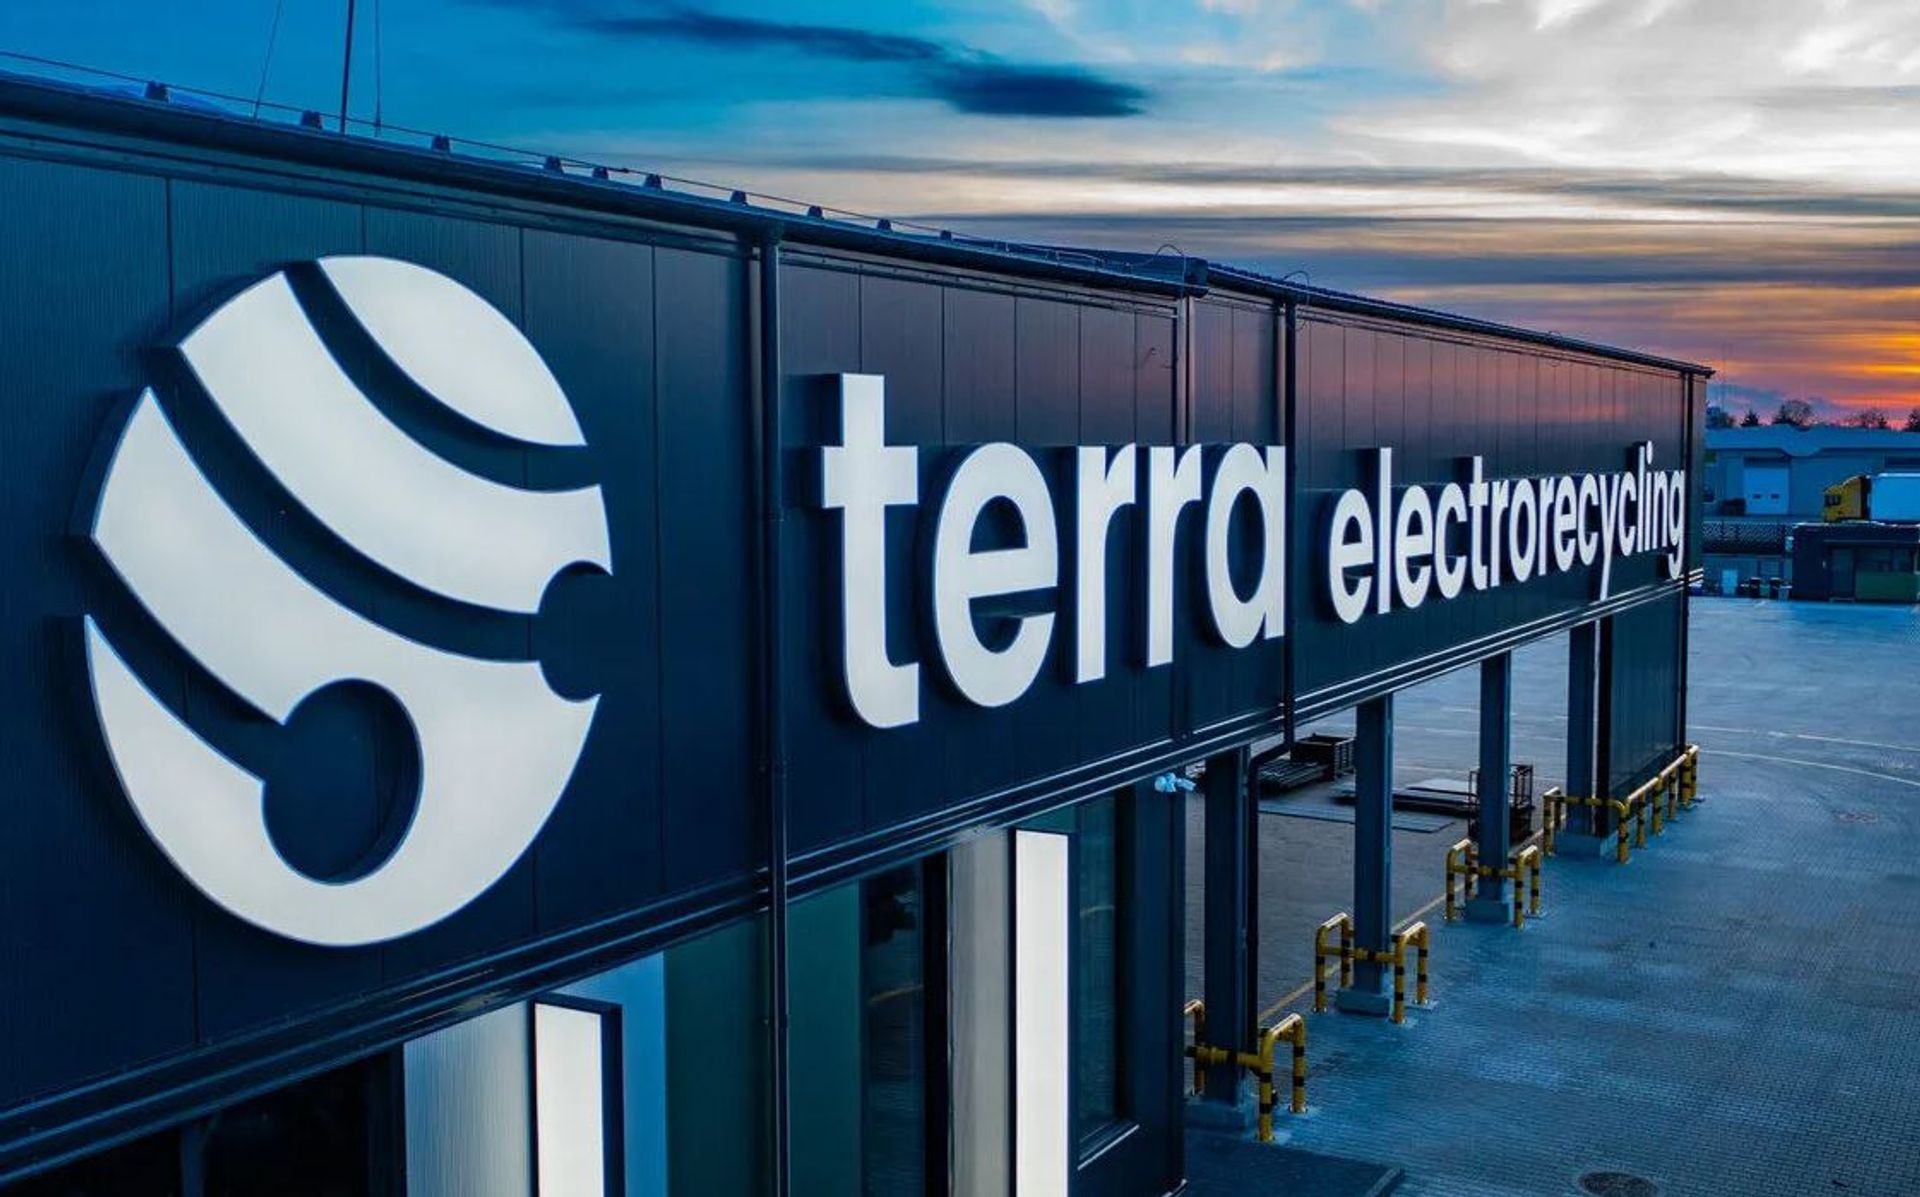 Innowacyjny zakład Terra Electrorecycling pod Warszawą już działa! 